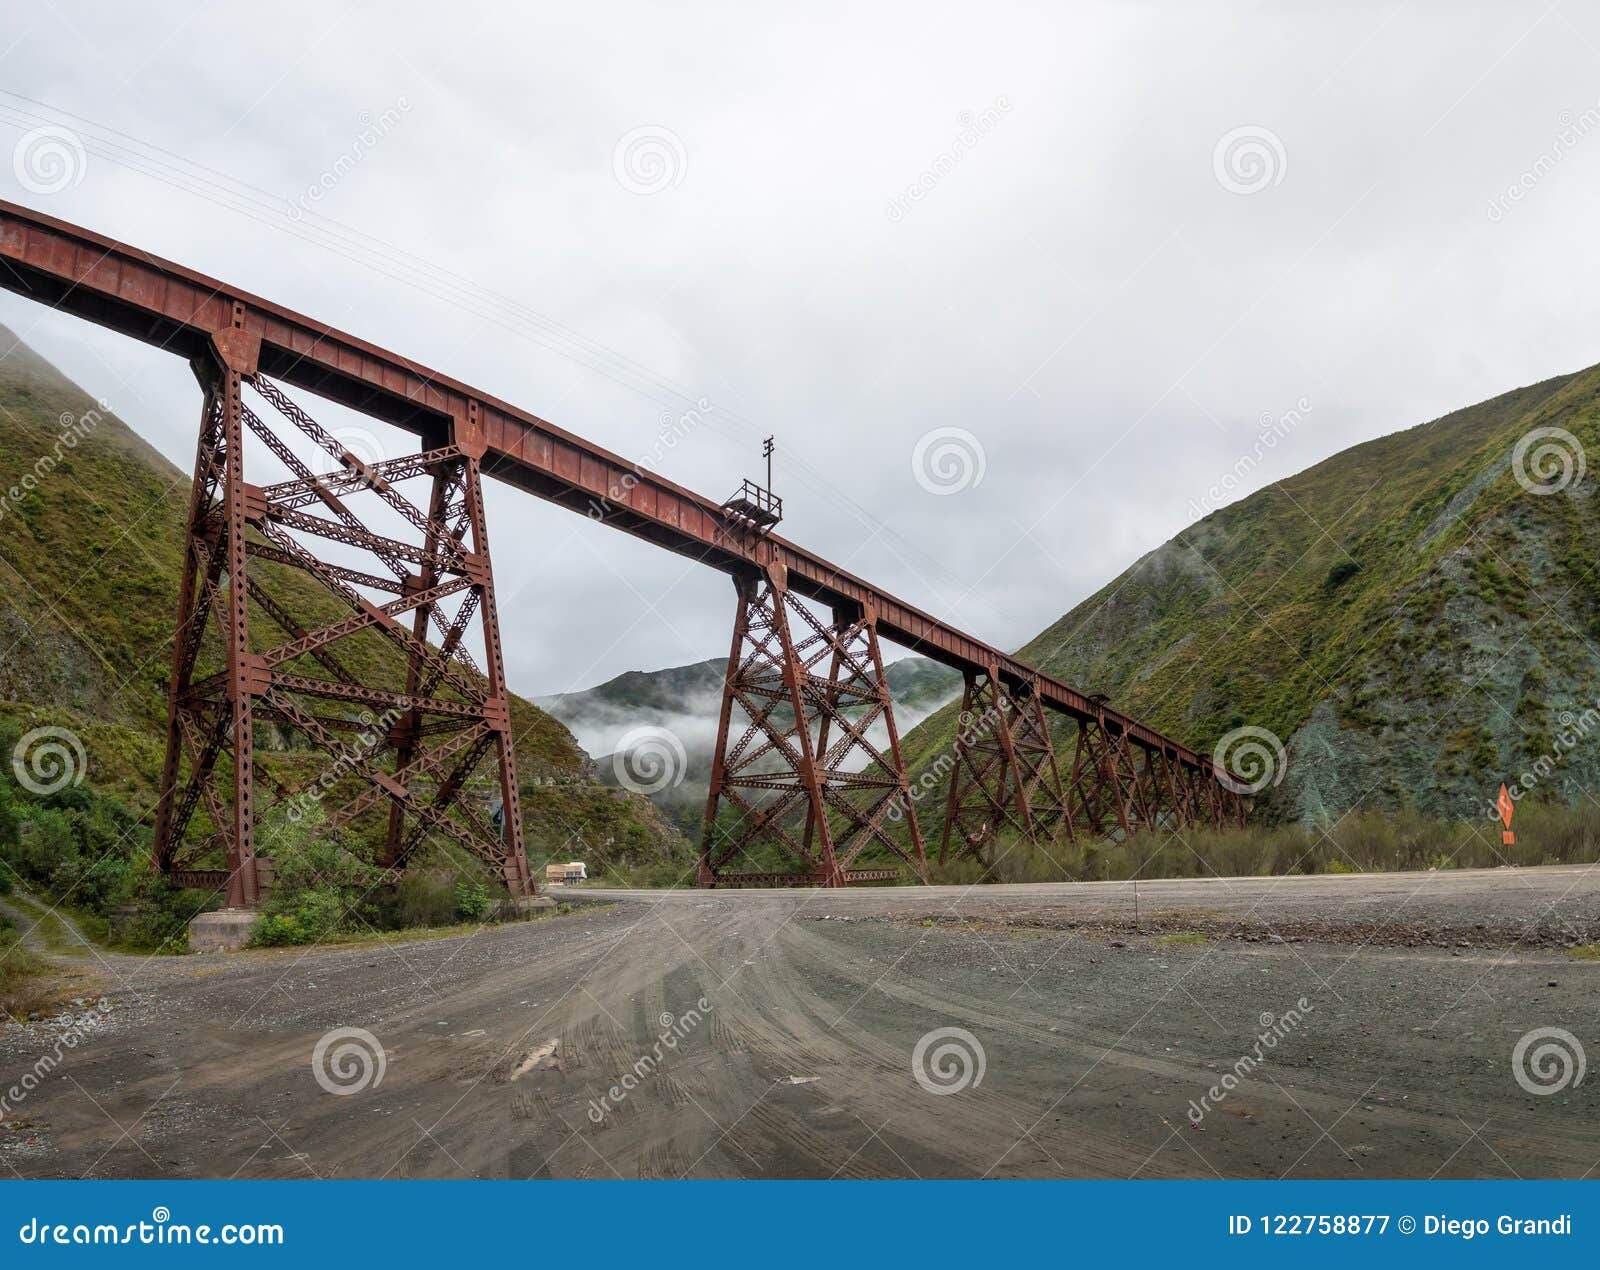 viaducto del toro del toro viaduct tren de las nubes railway - quebrada del toro, salta, argentina